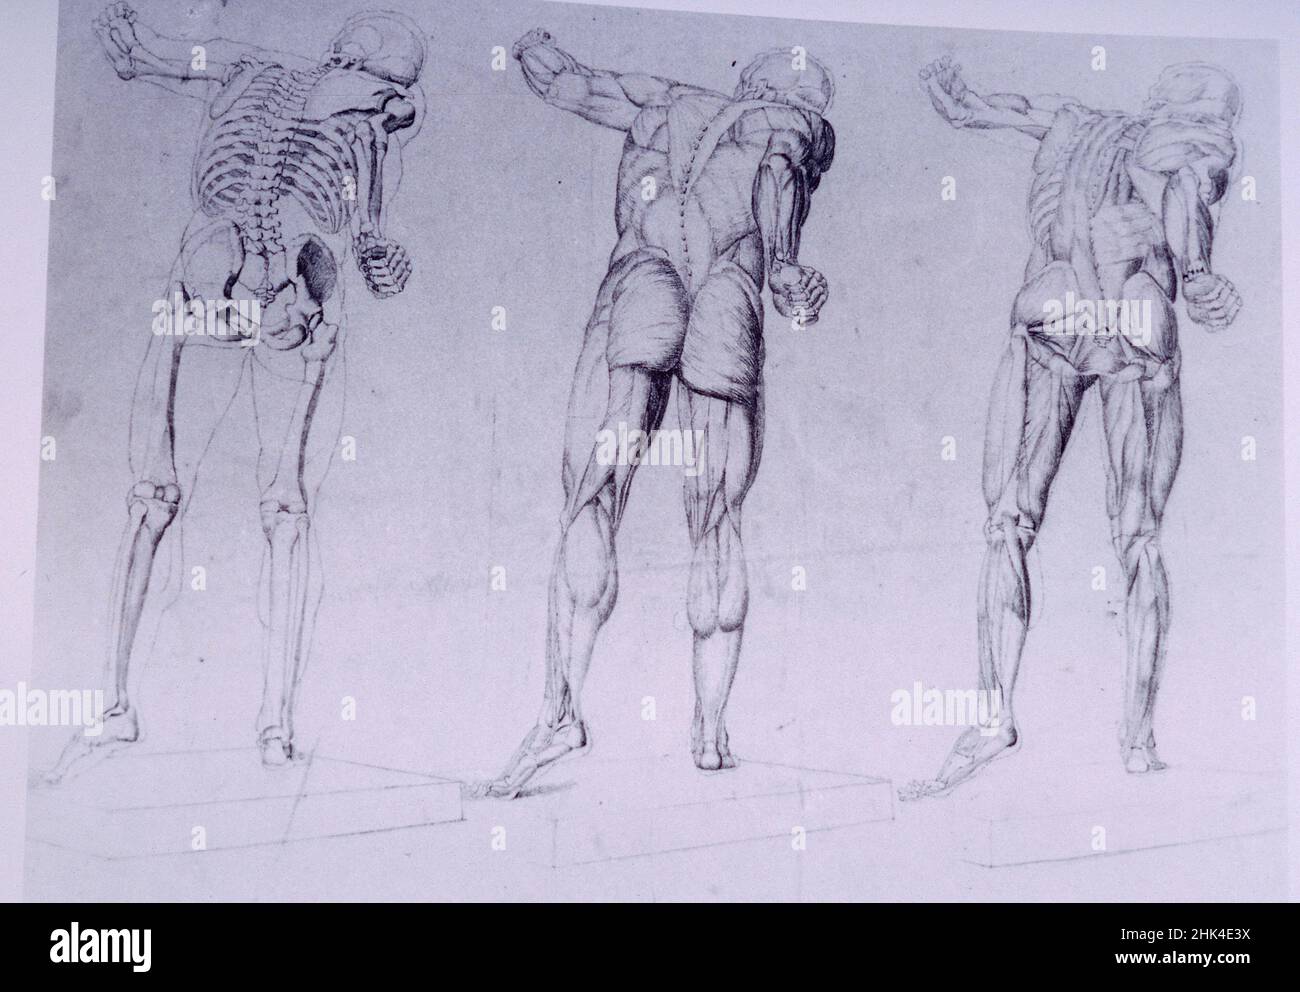 Dessins anatomiques de l'artiste français Alphonse Perrin, 1900s Banque D'Images